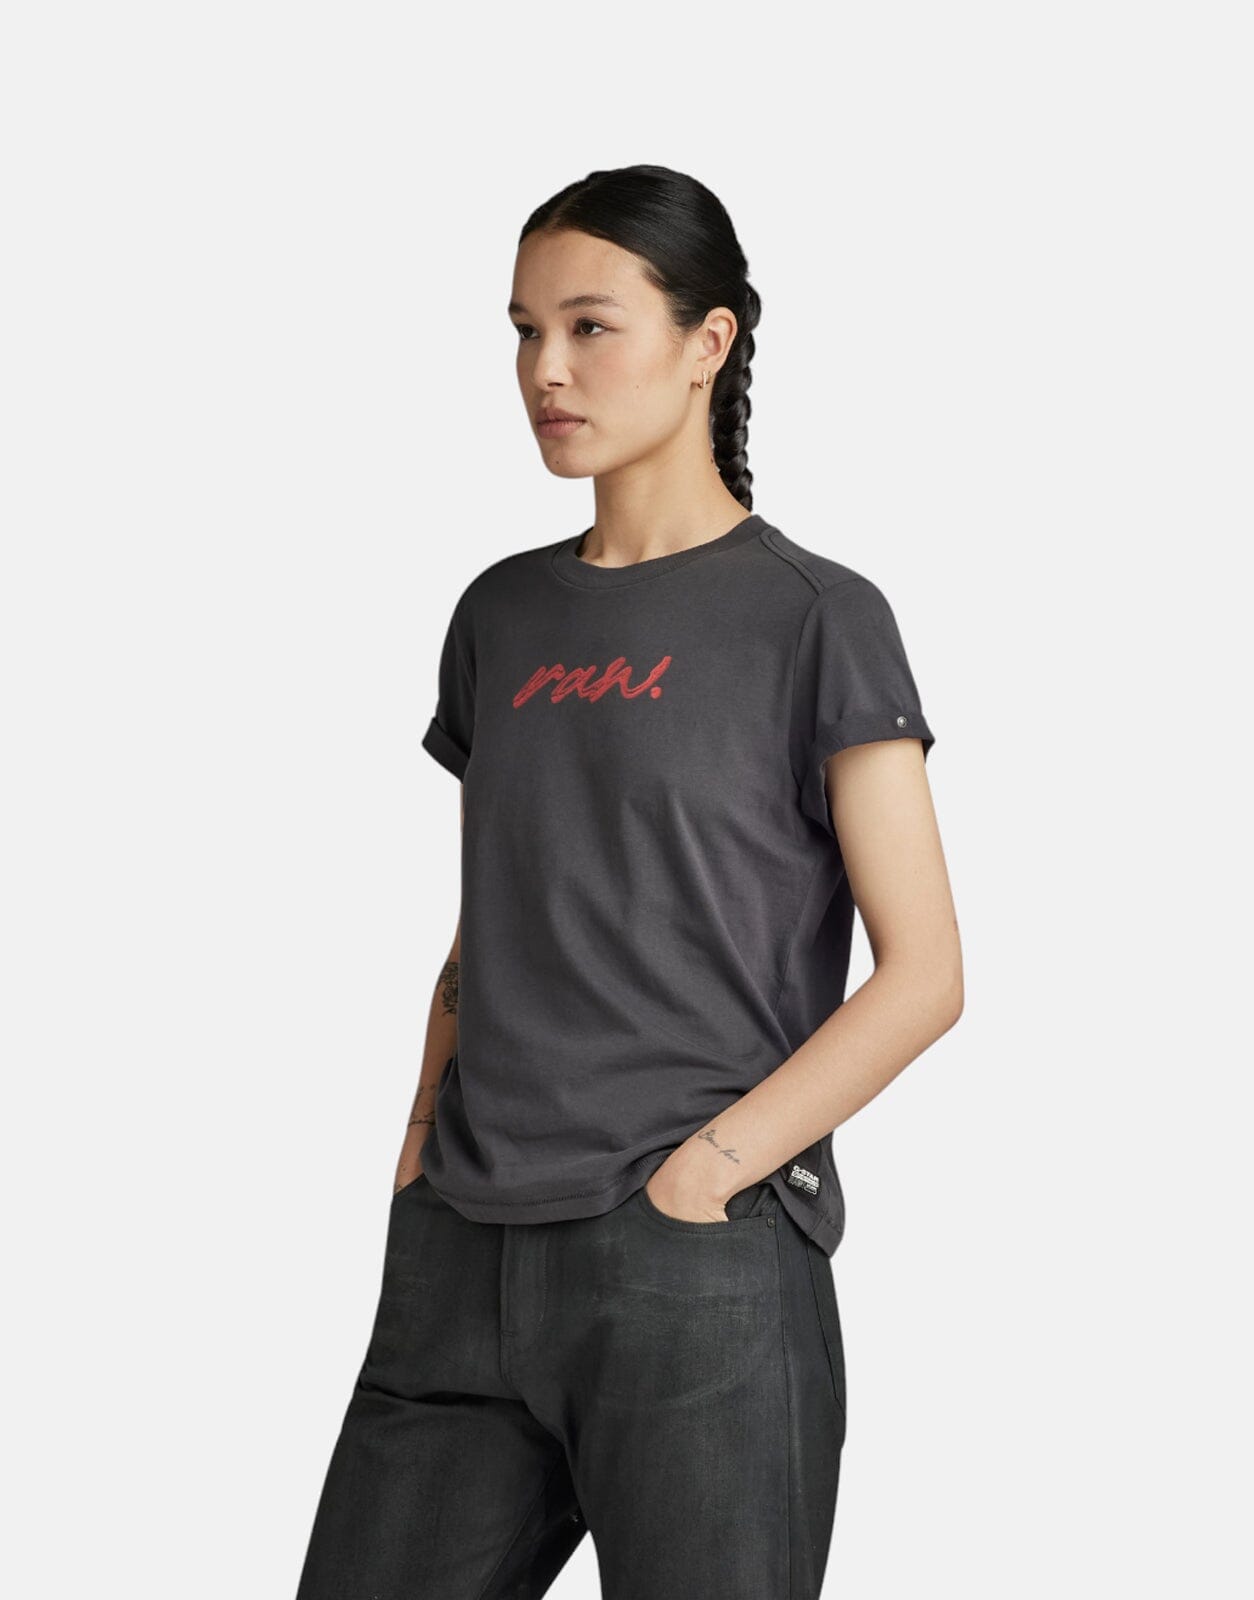 G-Star RAW Dot Asphalt T-Shirt - Subwear